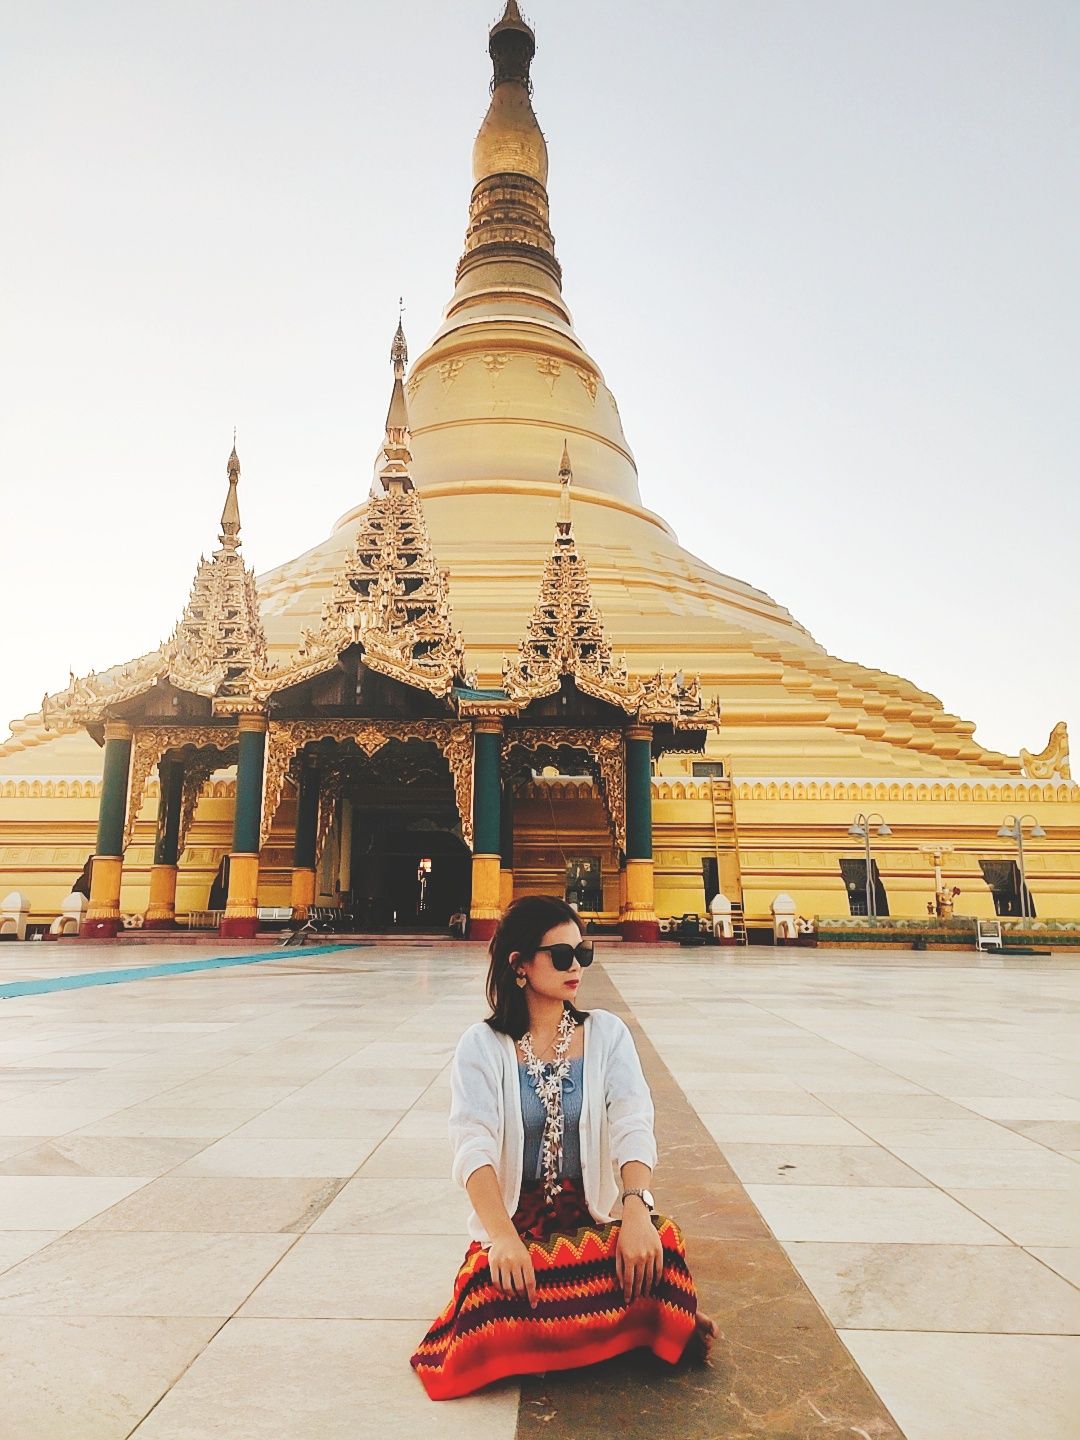 来缅甸千万别去看大金塔？今天在缅甸新首都内比都！缅甸人称大金塔为“瑞大光塔”，“瑞”在缅语中是“金”